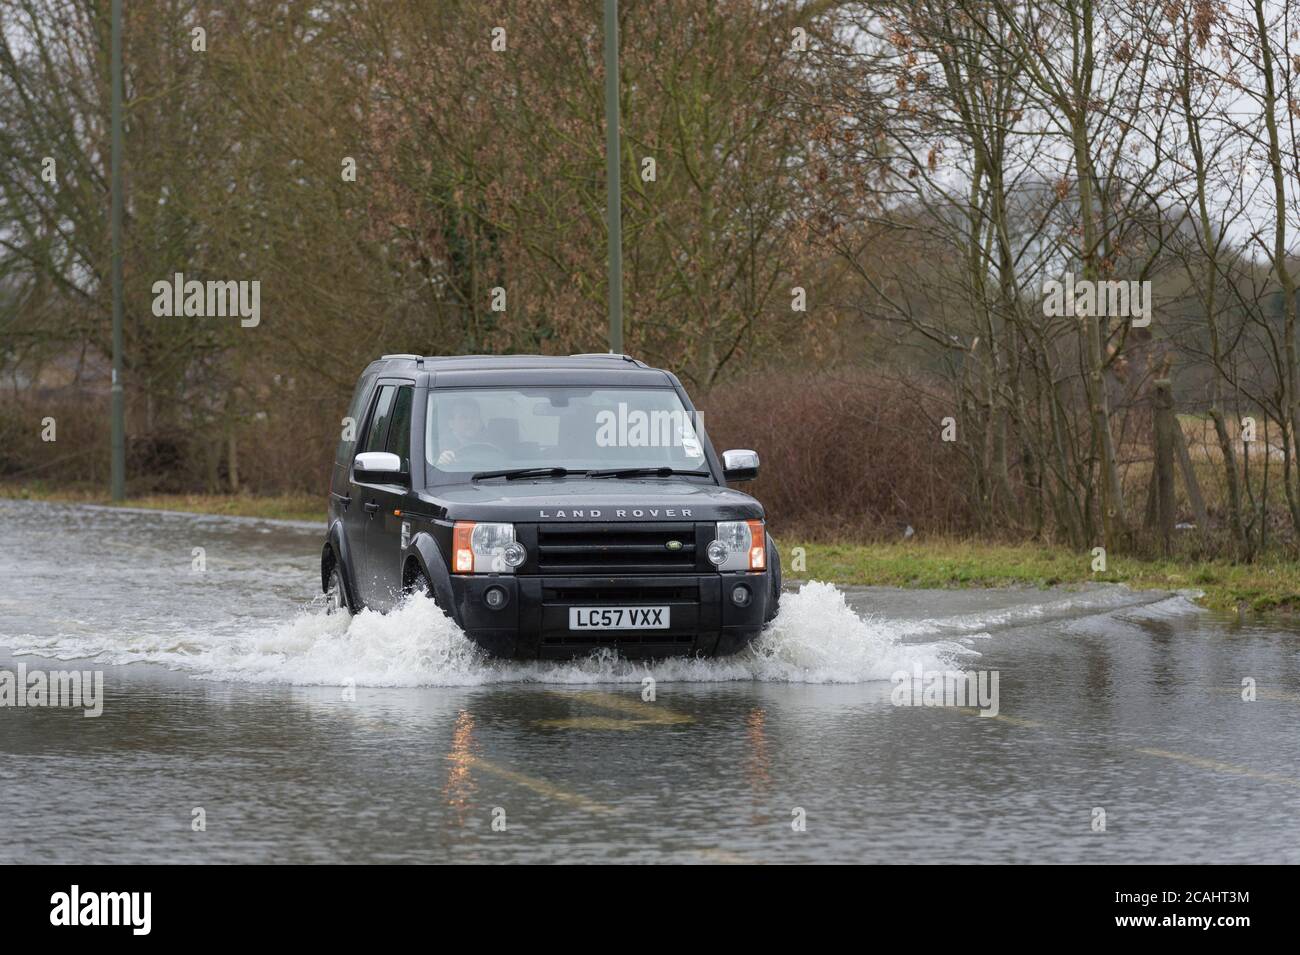 Une voiture qui traverse les eaux d'inondation de Chertsey Lane, Egham Hythe, Surrey, après que la Tamise a brisé les berges, Chertsey Lane, Egham Hythe, Surrey, Royaume-Uni. 14 févr. 2014 Banque D'Images